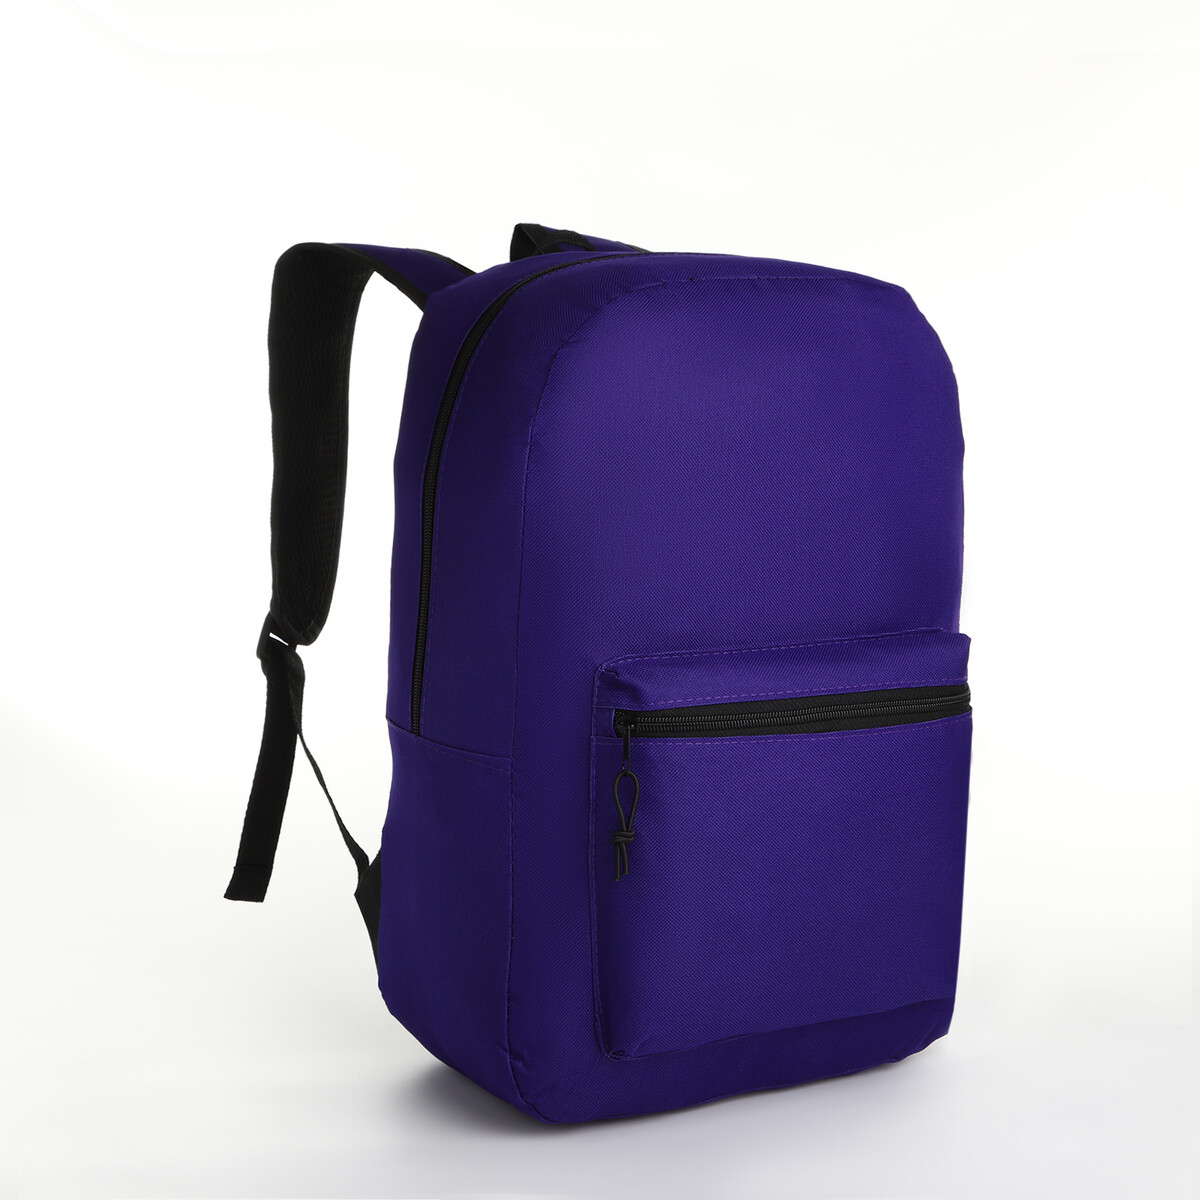 Рюкзак молодежный на молнии, наружный карман, цвет фиолетовый косметичка на молнии фиолетовый разно ный